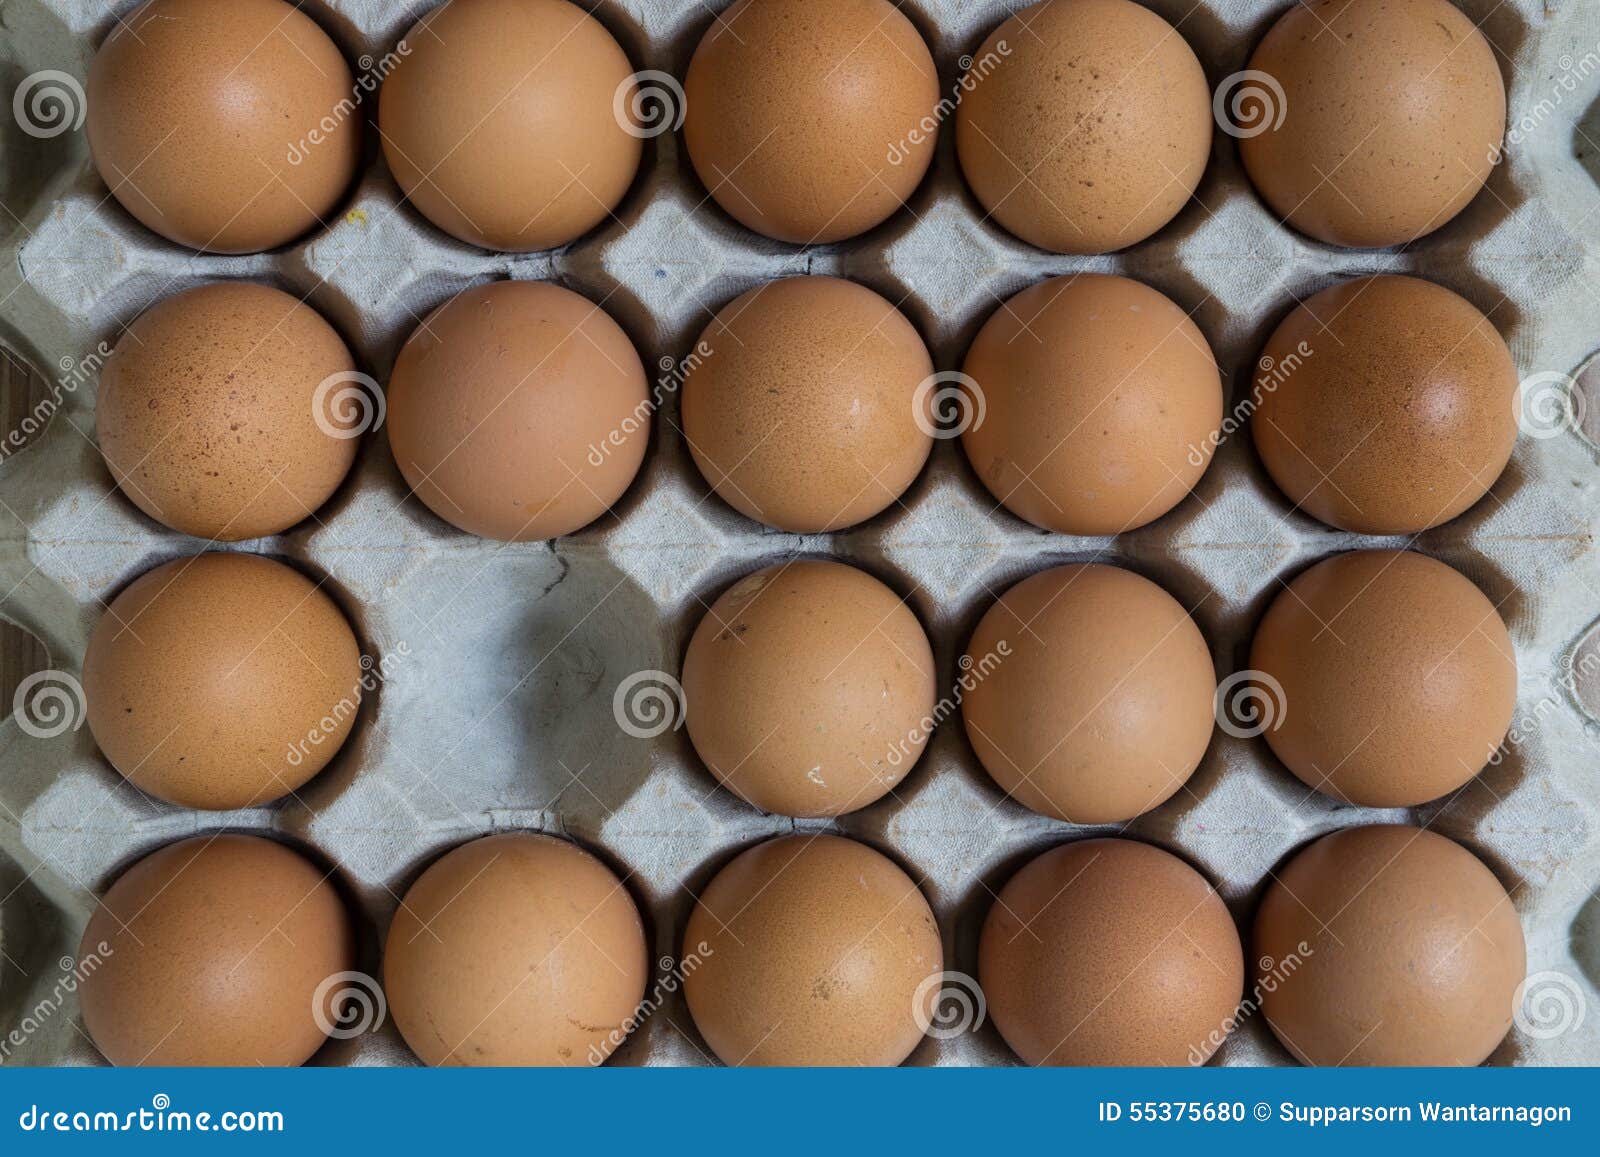 Afwezig concept: Een ei verdwijnt van de groep eieren. Het beeld illustreert afwezig concept in bedrijfsleven